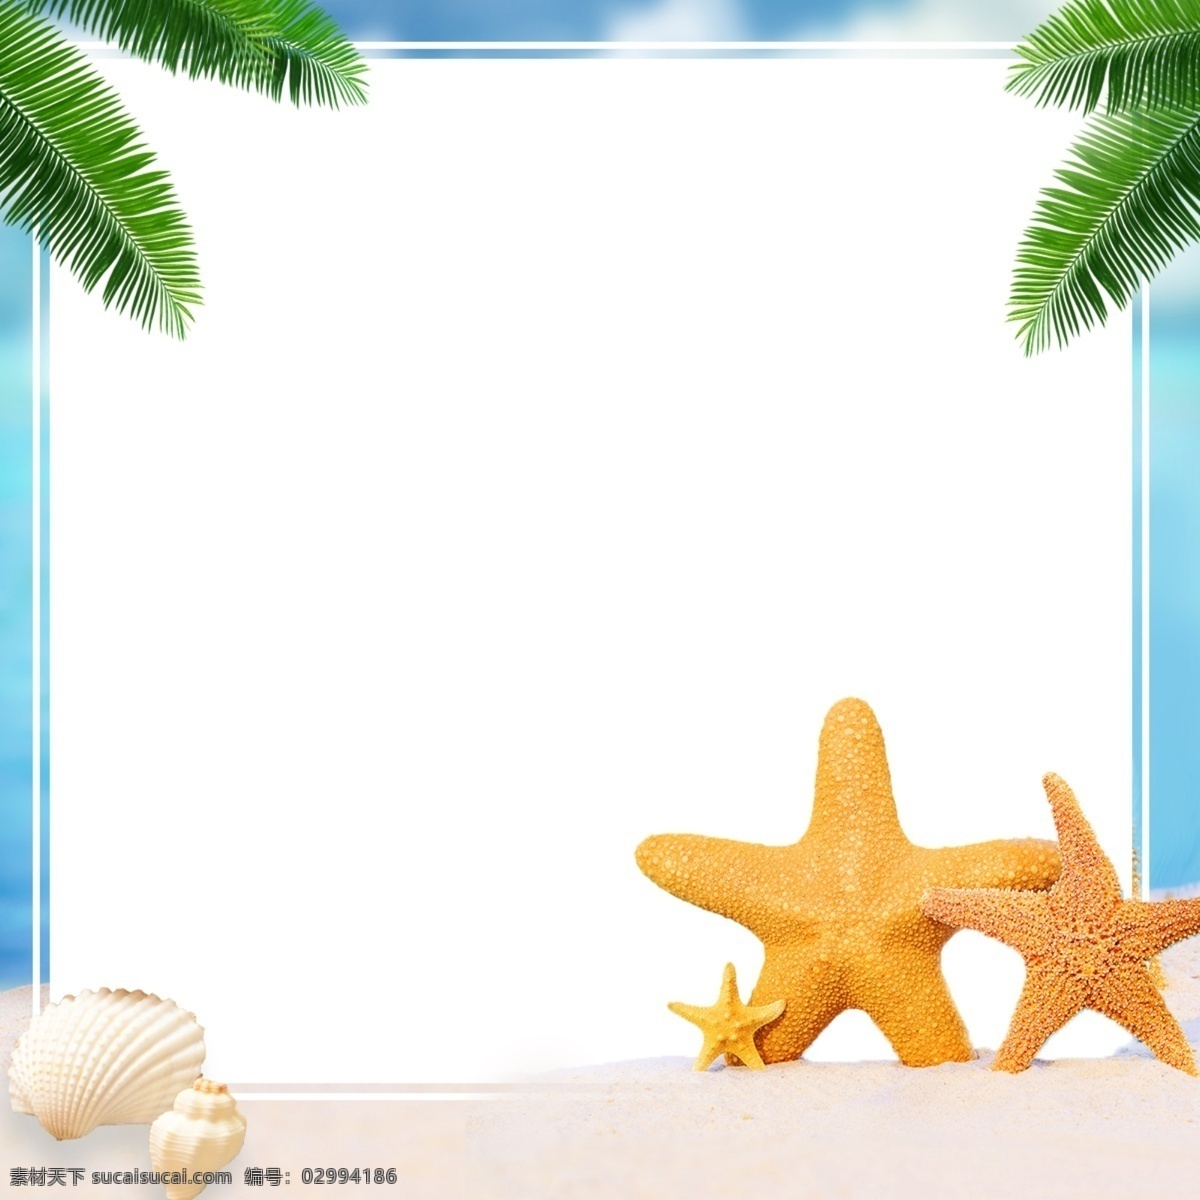 海星 唯美 相册 背景 源文件 夏日 海边 广告 海洋 夏威夷 度假 海螺 夏天 平面 手机淘宝